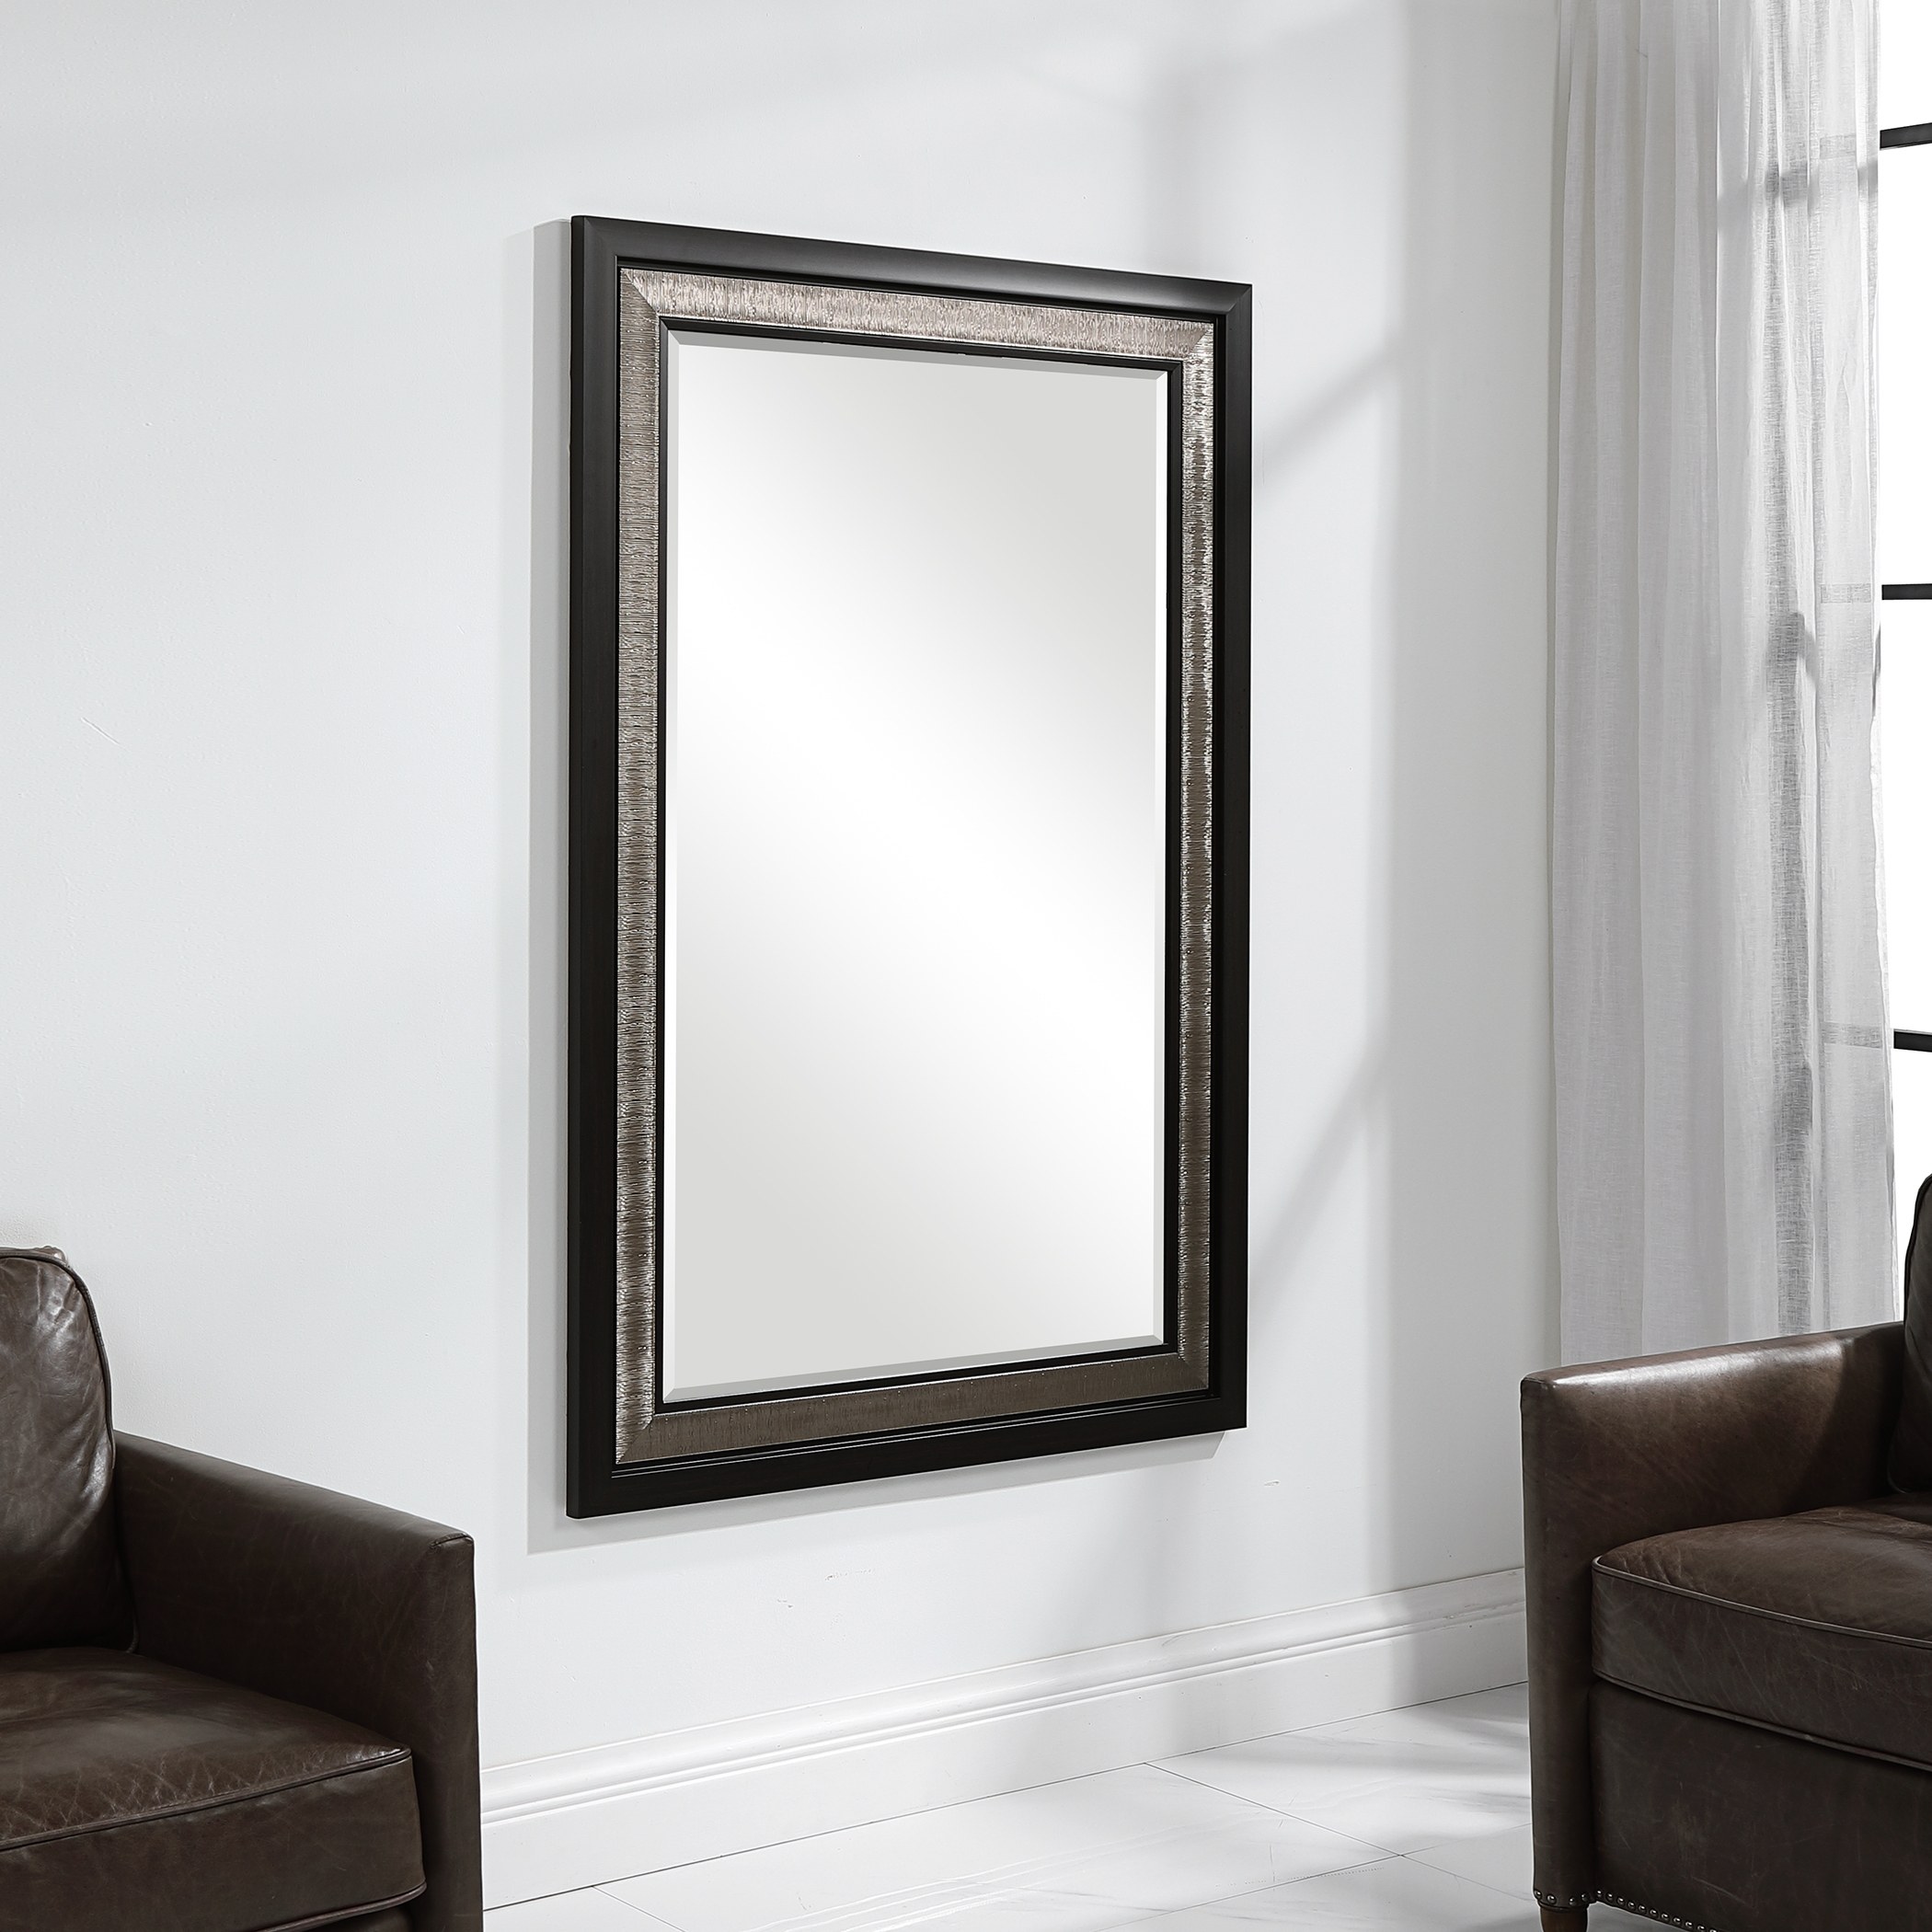 Chamberlain Silver & Ebony Mirror - Image 1